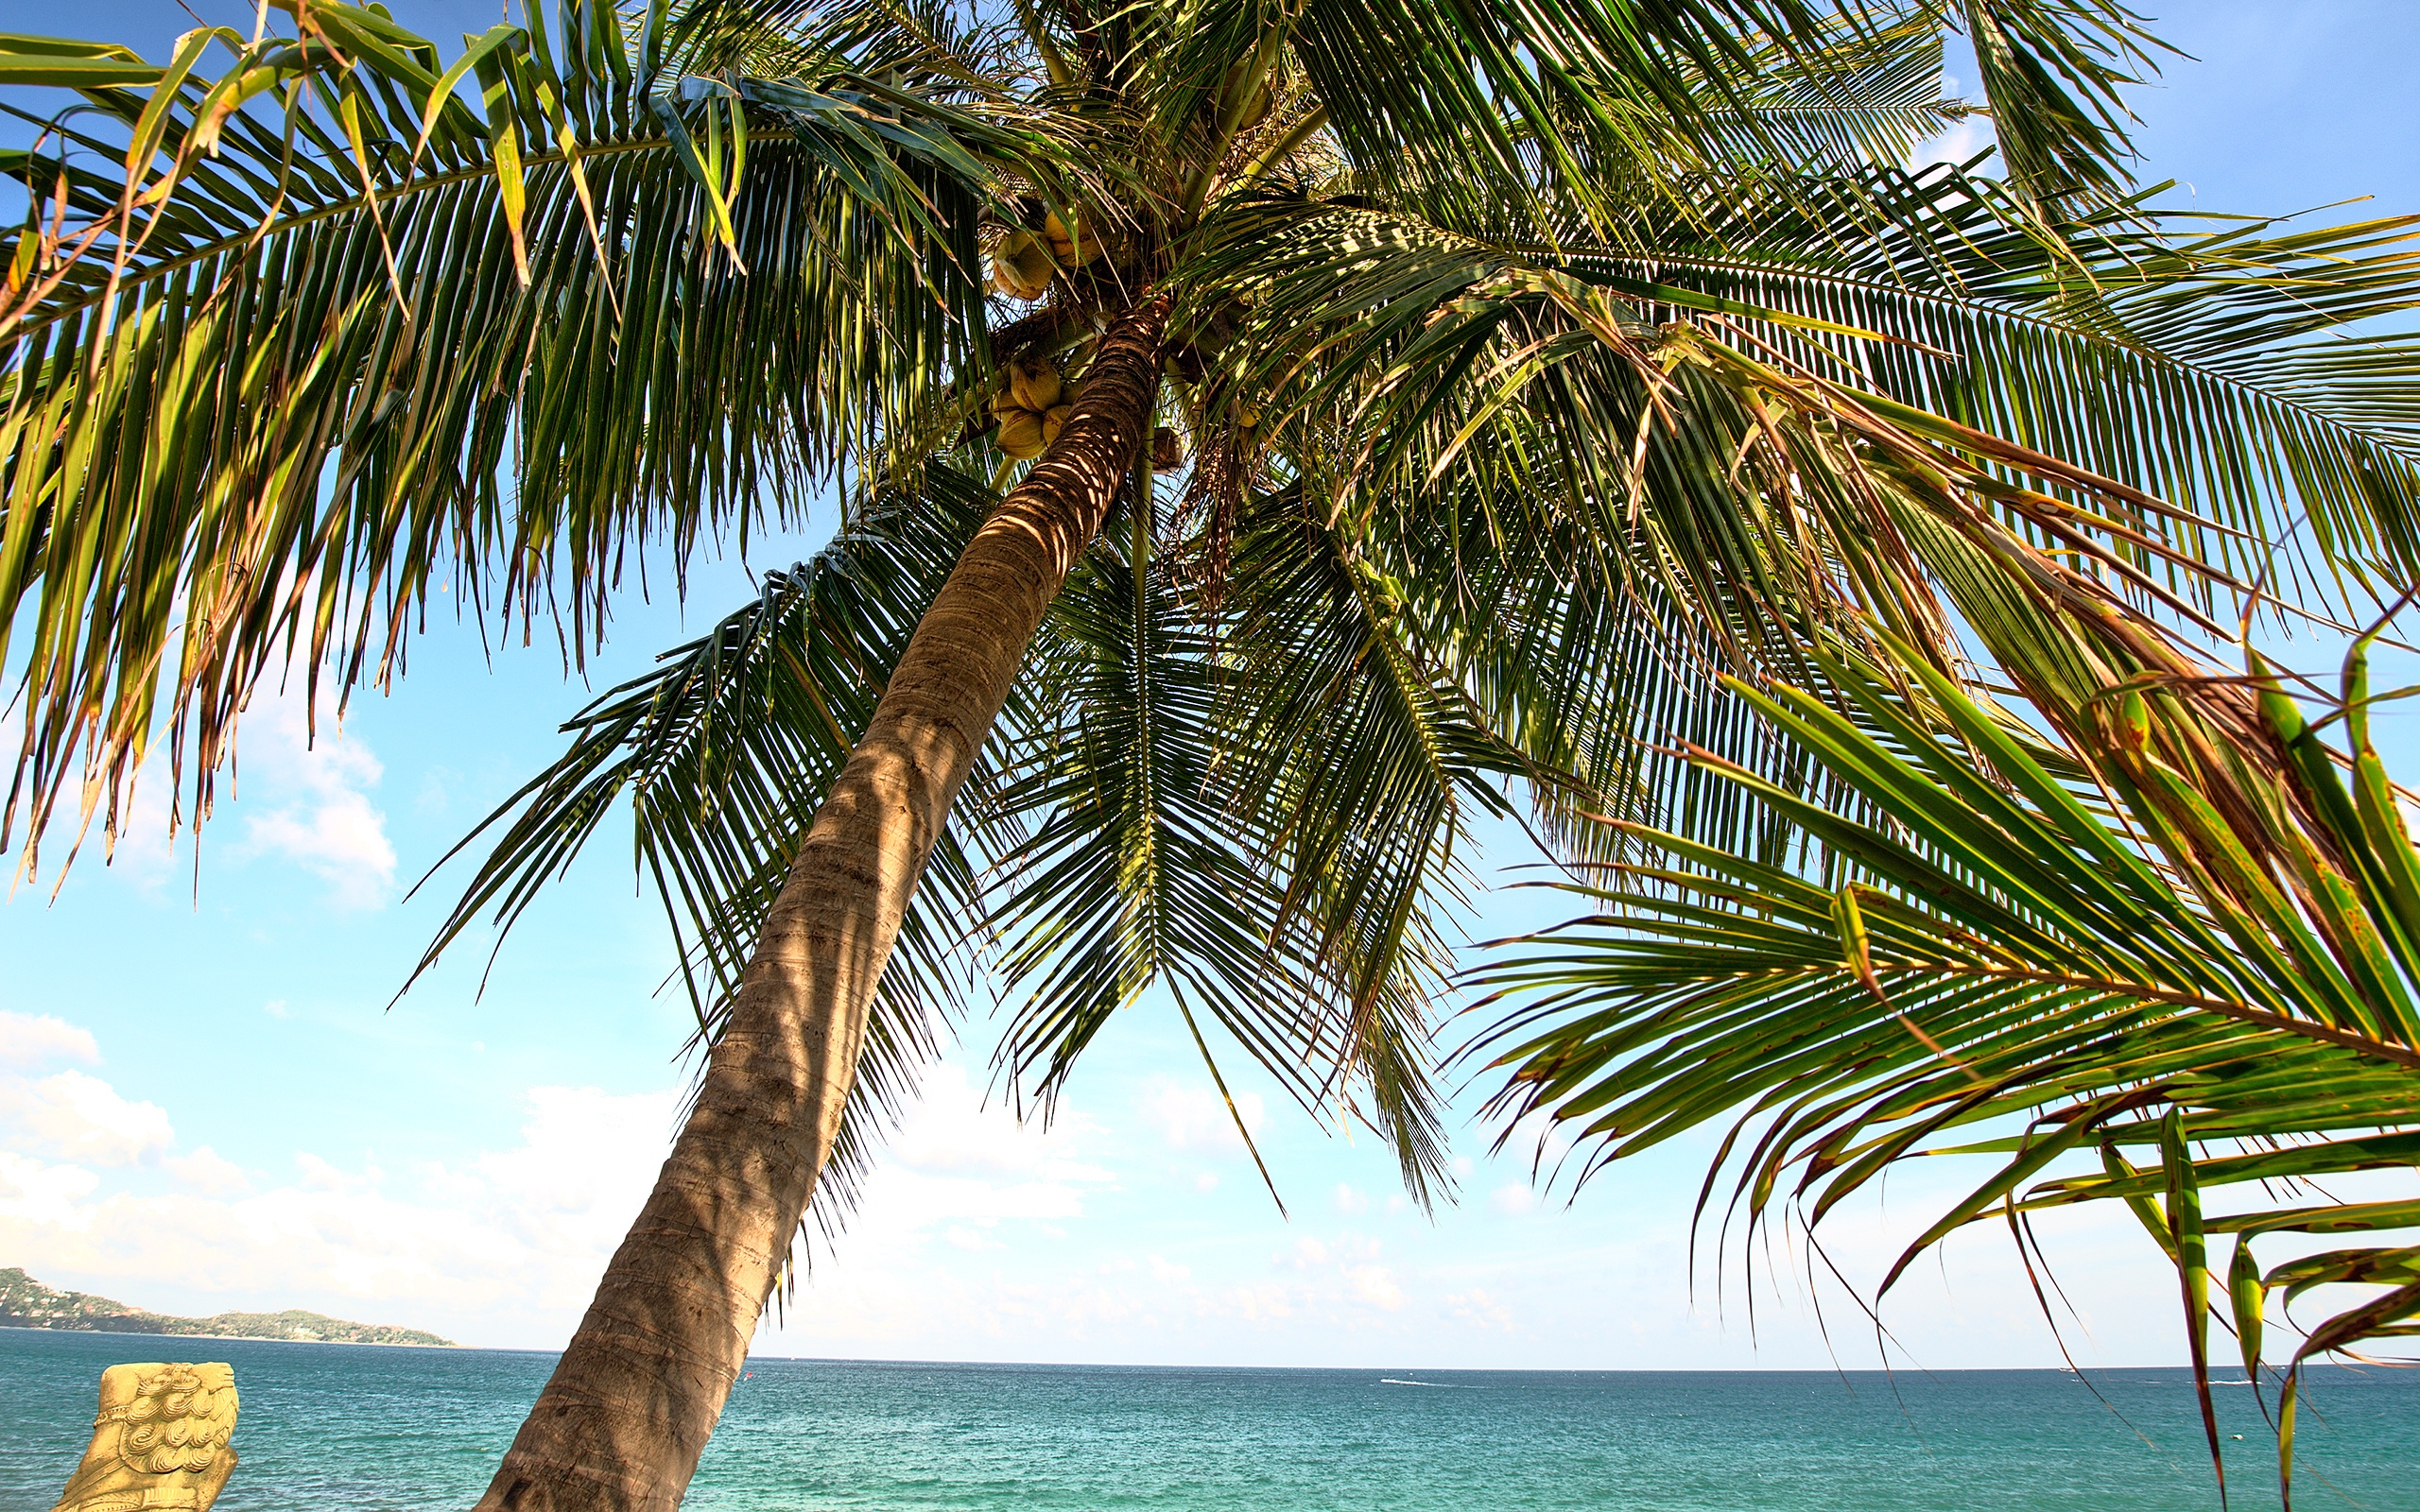 والپیپر درختان نخل در ساحل طراوت بخش دریا در یک نمای هنری